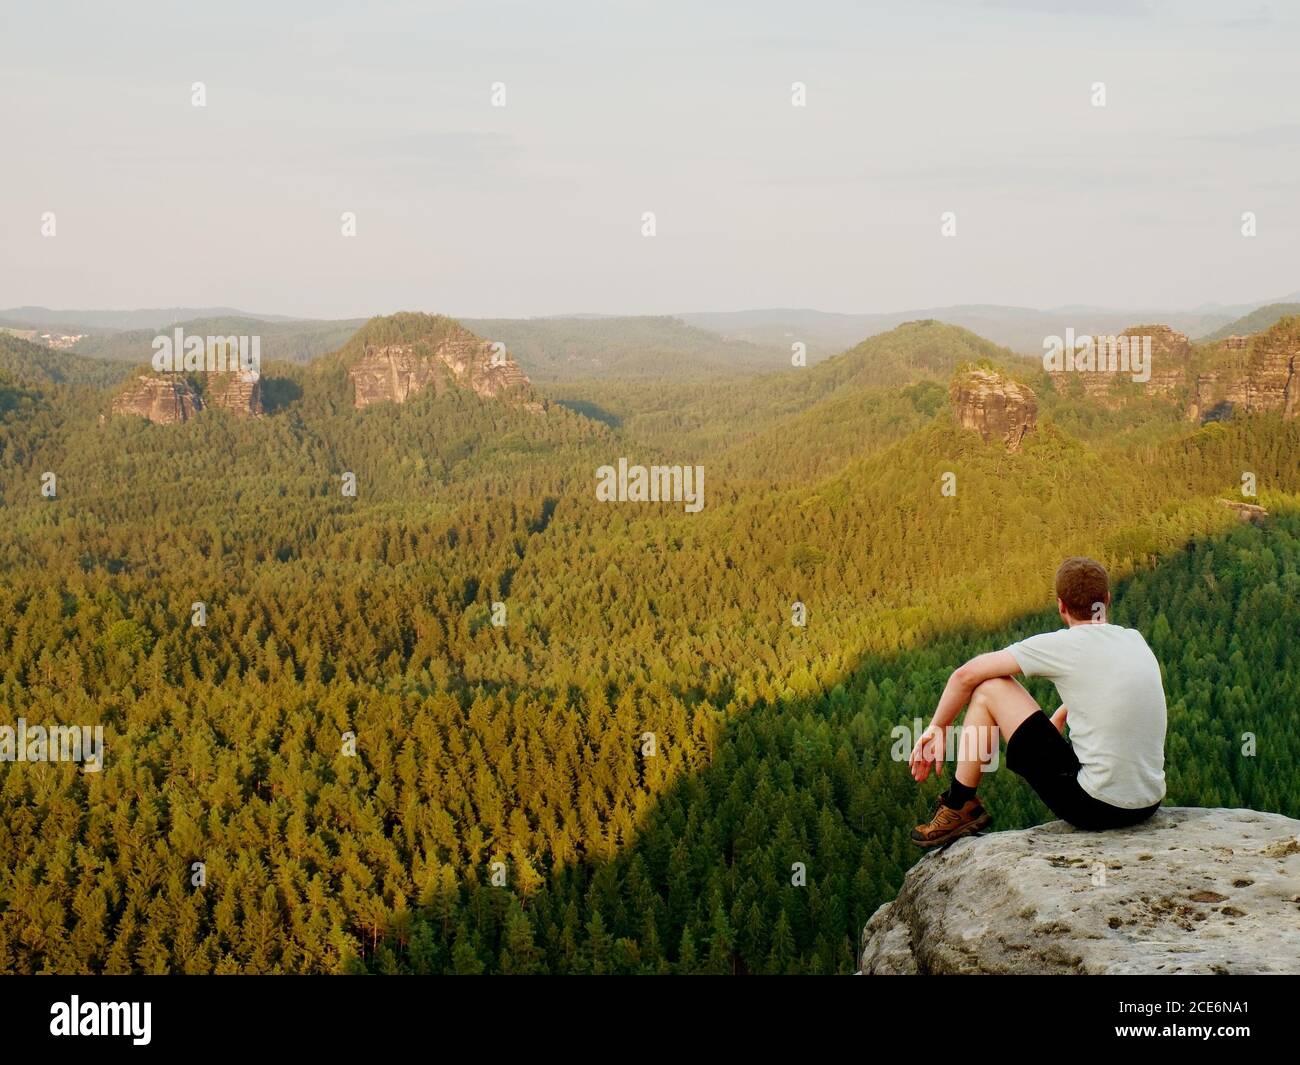 Moment de solitude. Un homme en chemise s'assoit sur la falaise de roche et regarde dans la vallée de la forêt. Banque D'Images